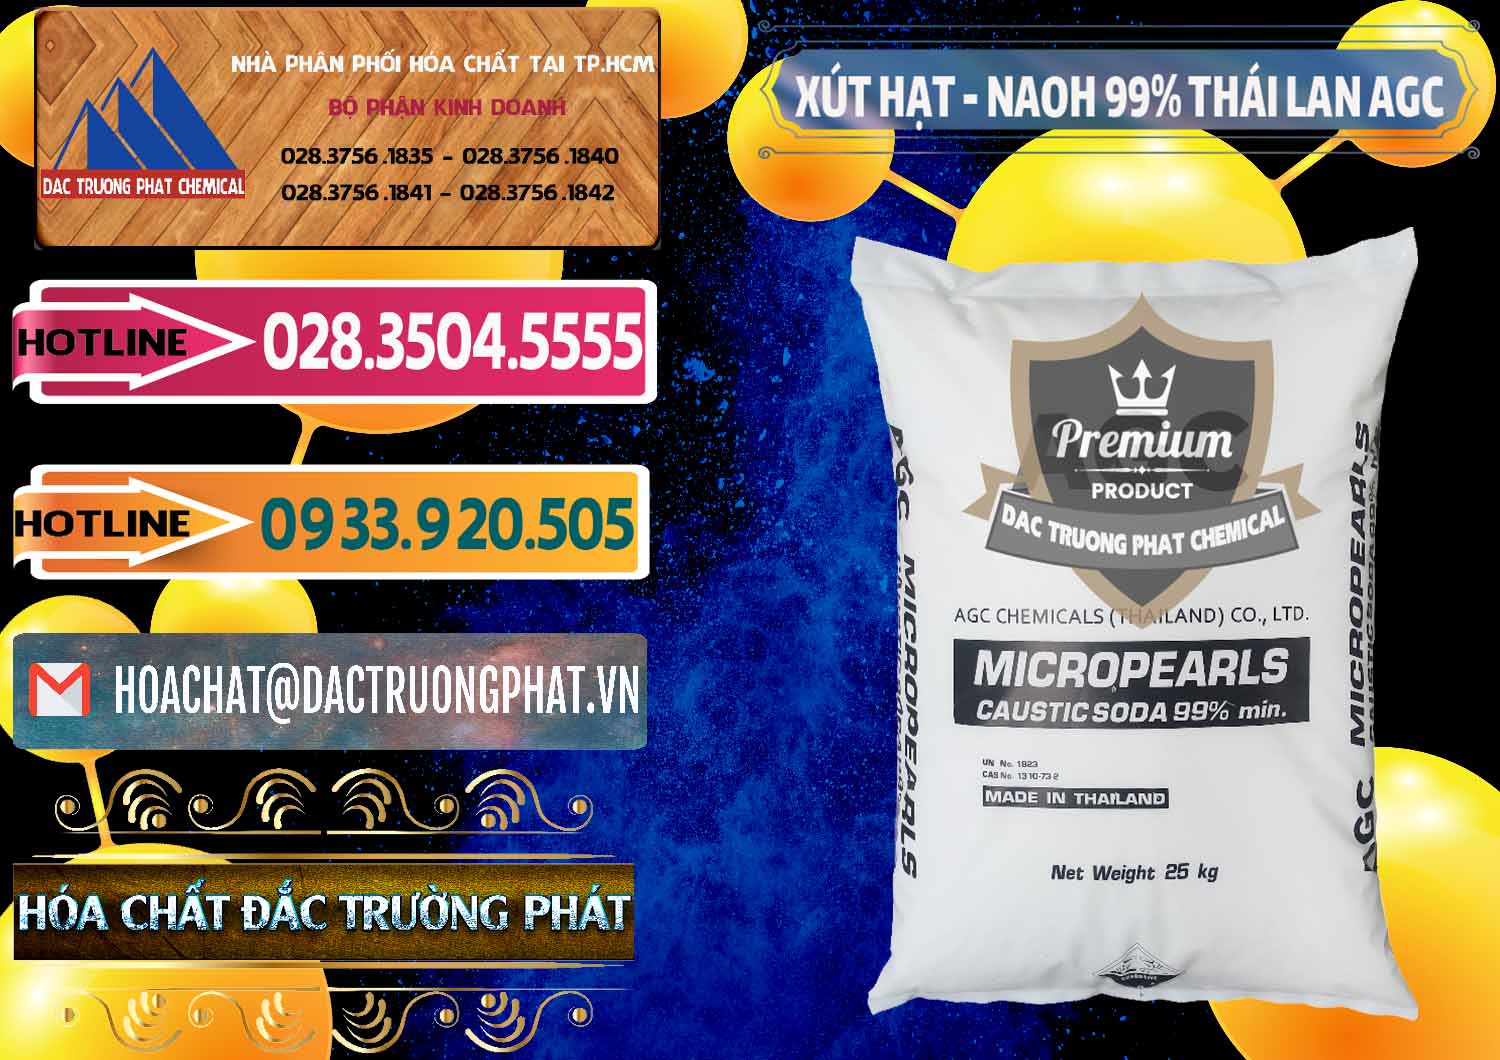 Cty chuyên bán - cung cấp Xút Hạt - NaOH Bột 99% AGC Thái Lan - 0168 - Phân phối và nhập khẩu hóa chất tại TP.HCM - dactruongphat.vn